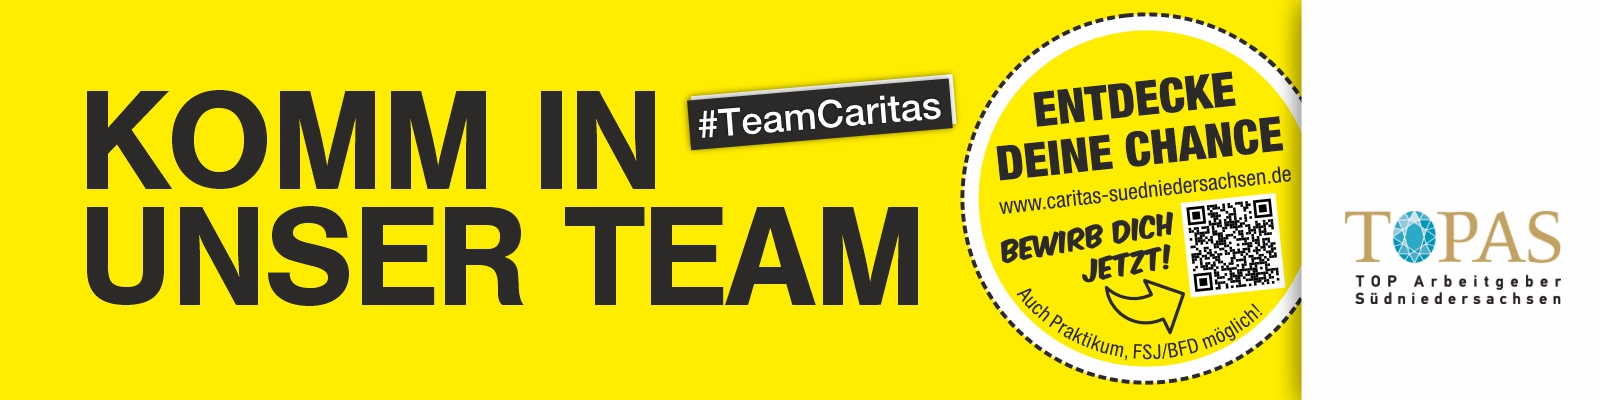 Karriere bei der Caritas: Komm in unser Team